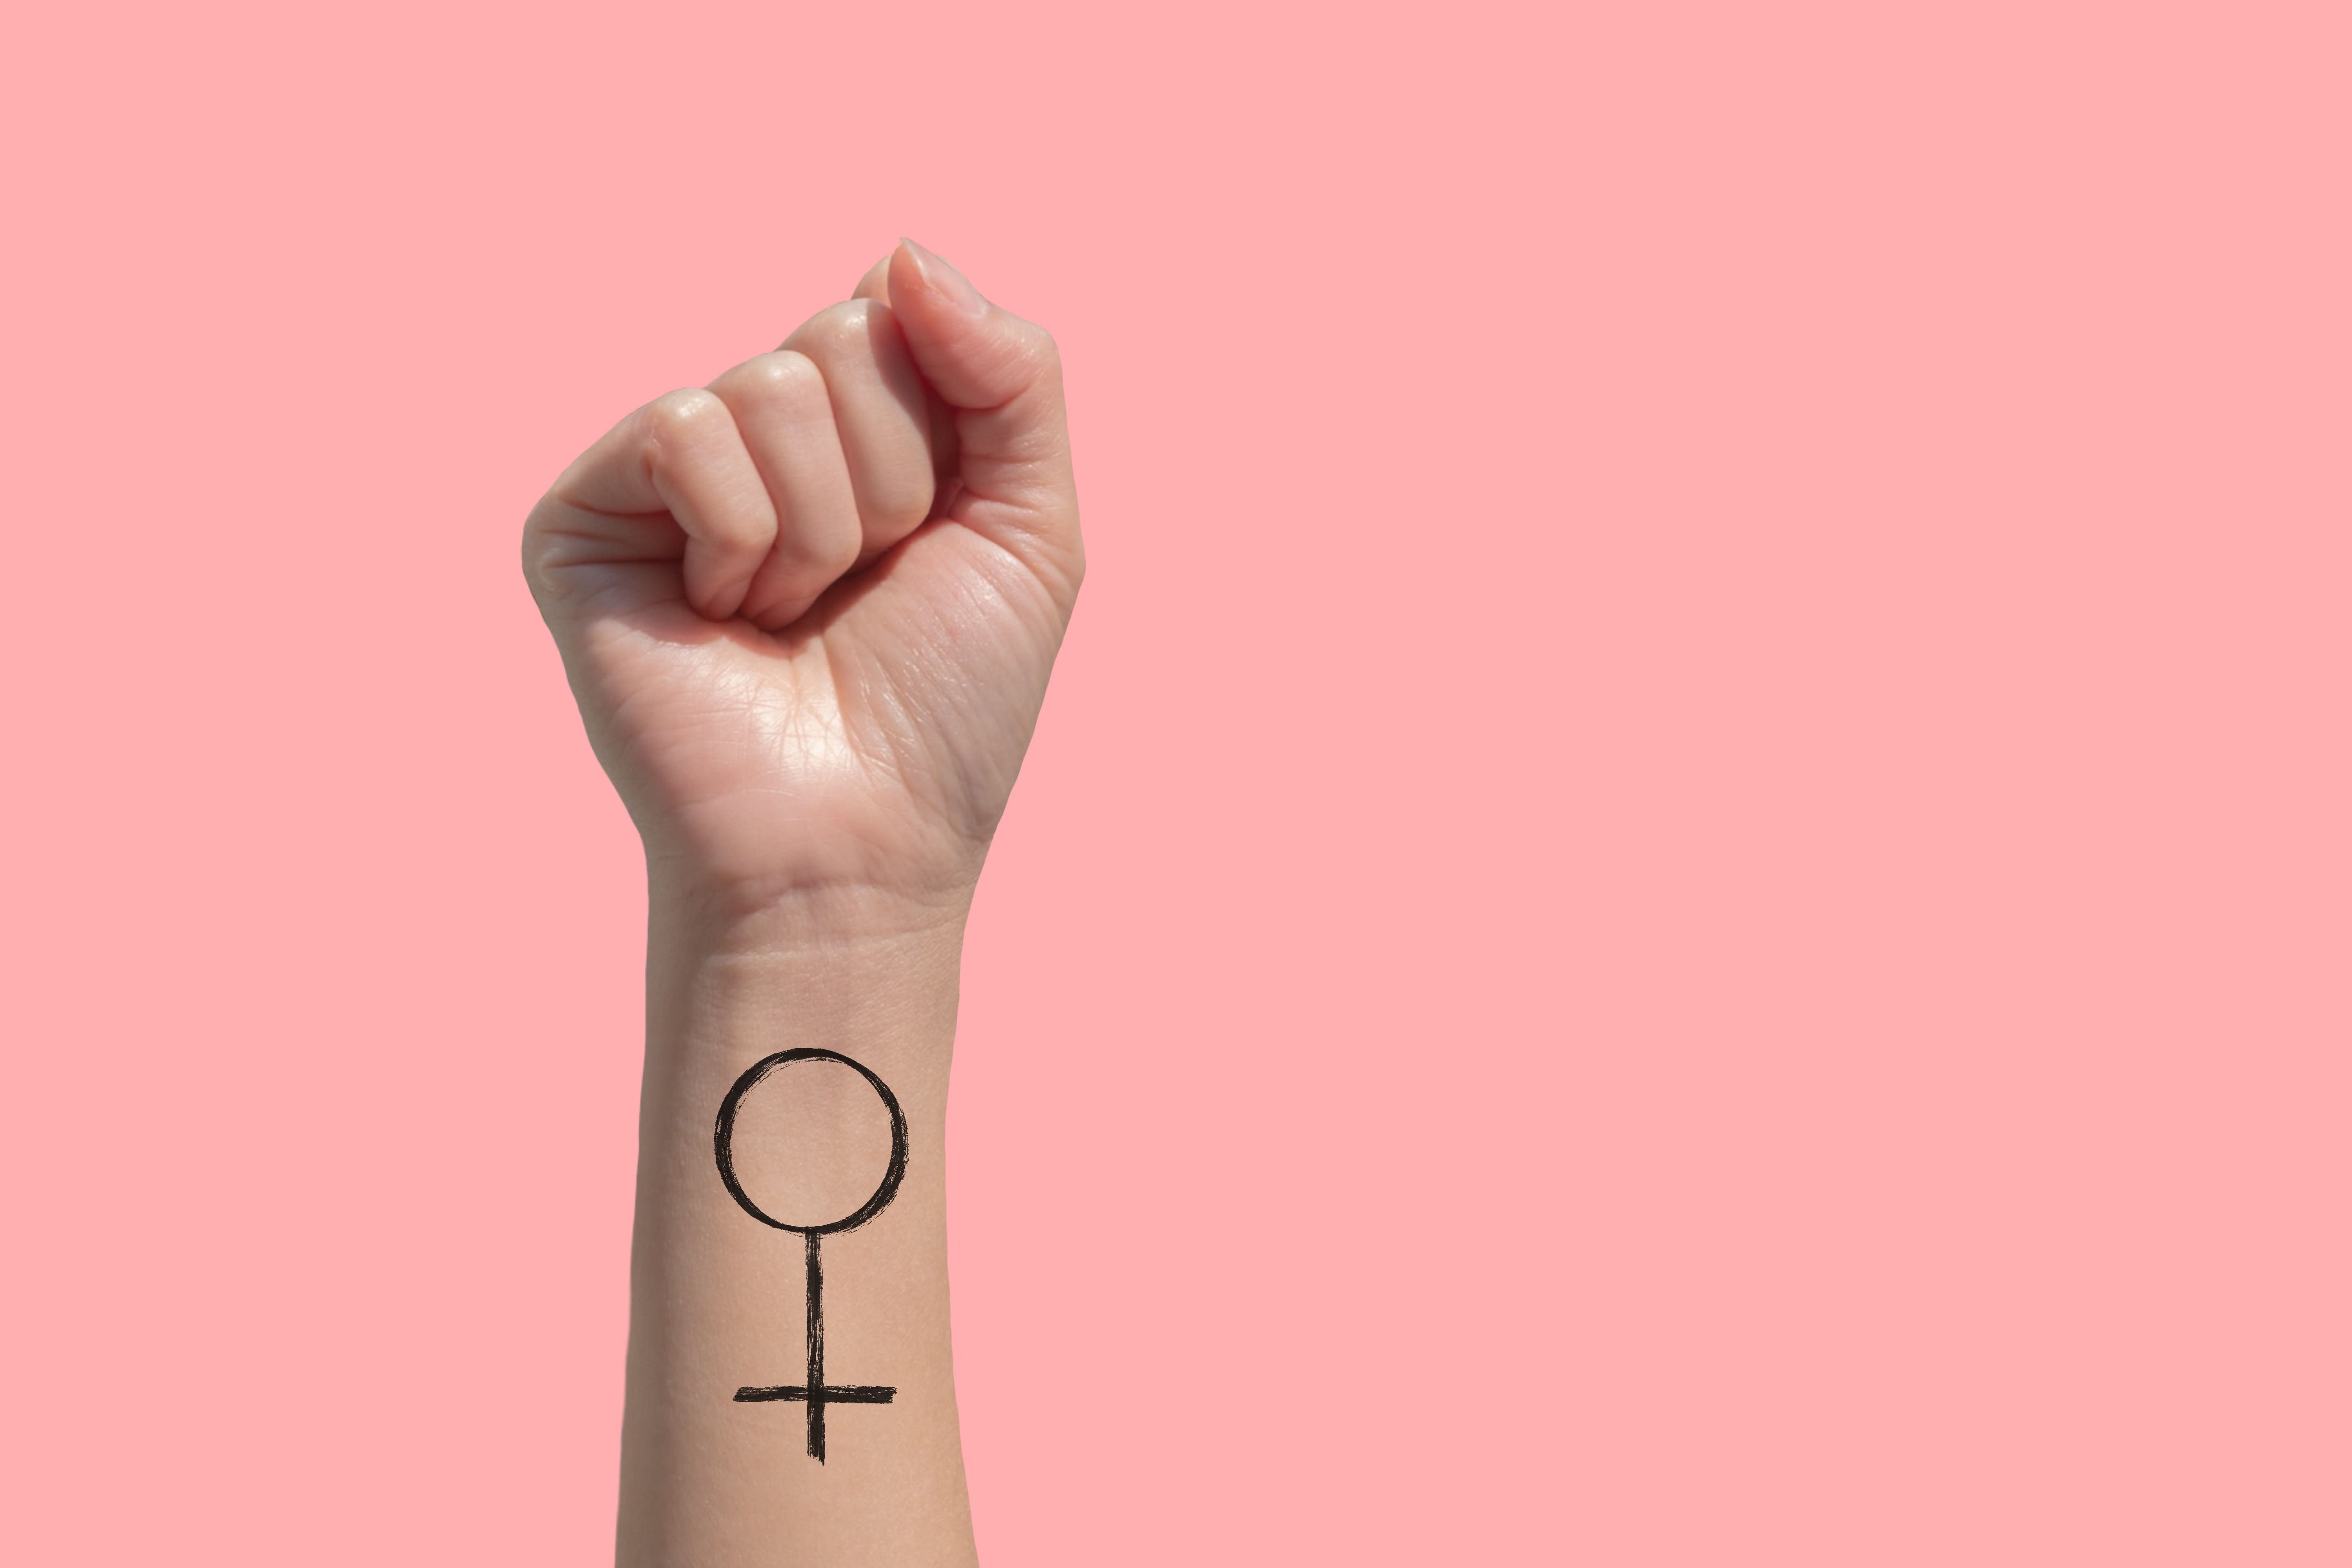 mão com o punho fechado e o símbolo do feminismo desenhado em um fundo rosa